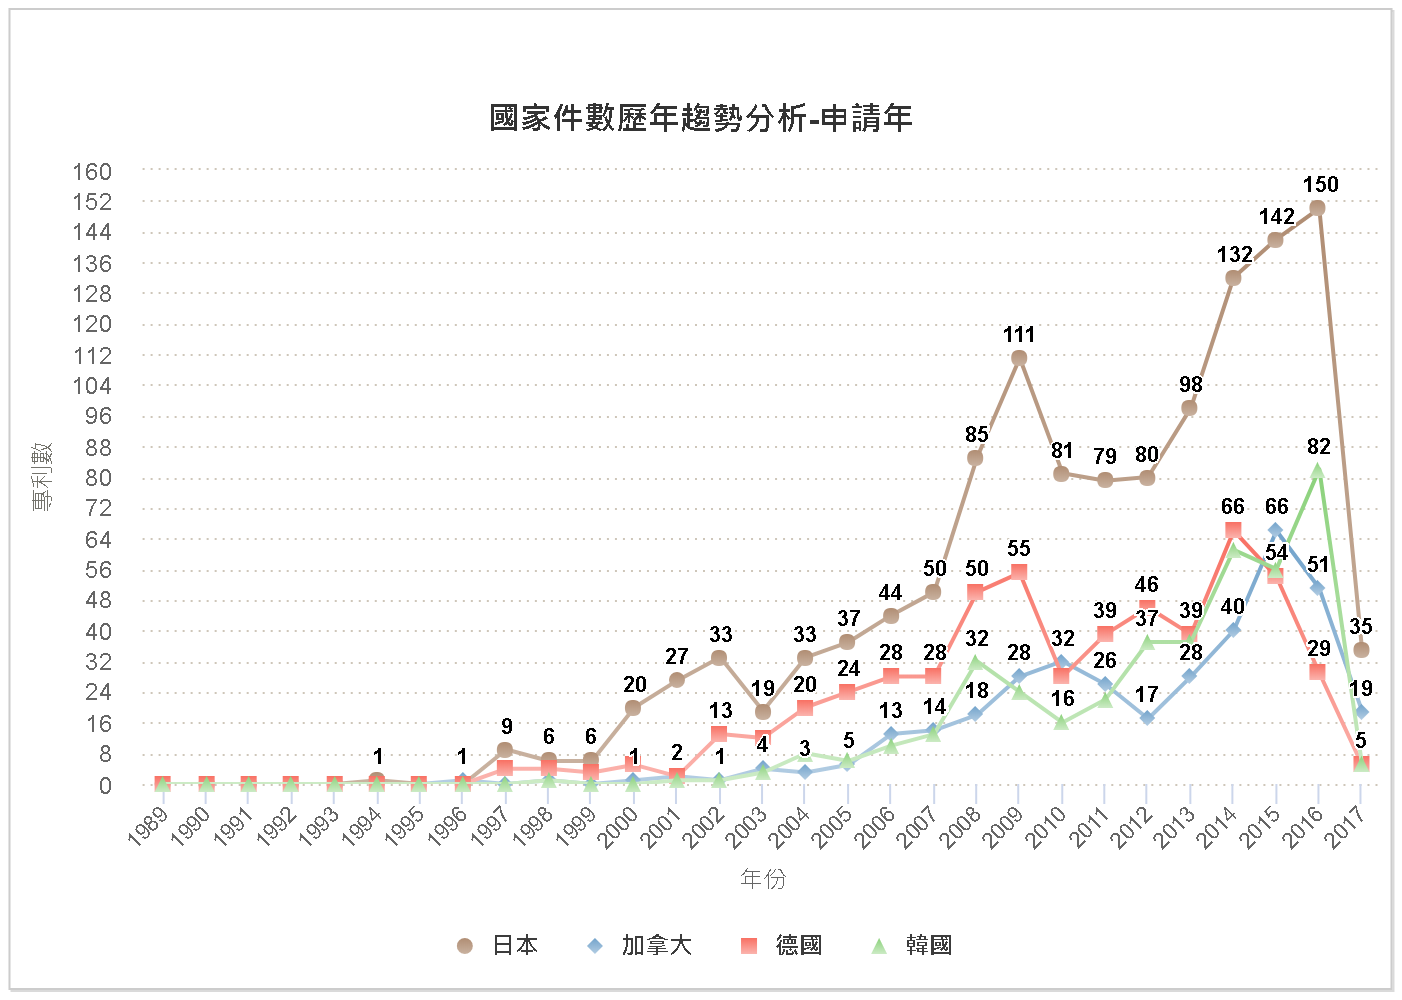 國家件數歷年趨勢分析圖-美國(日本、德國、韓國、加拿大)